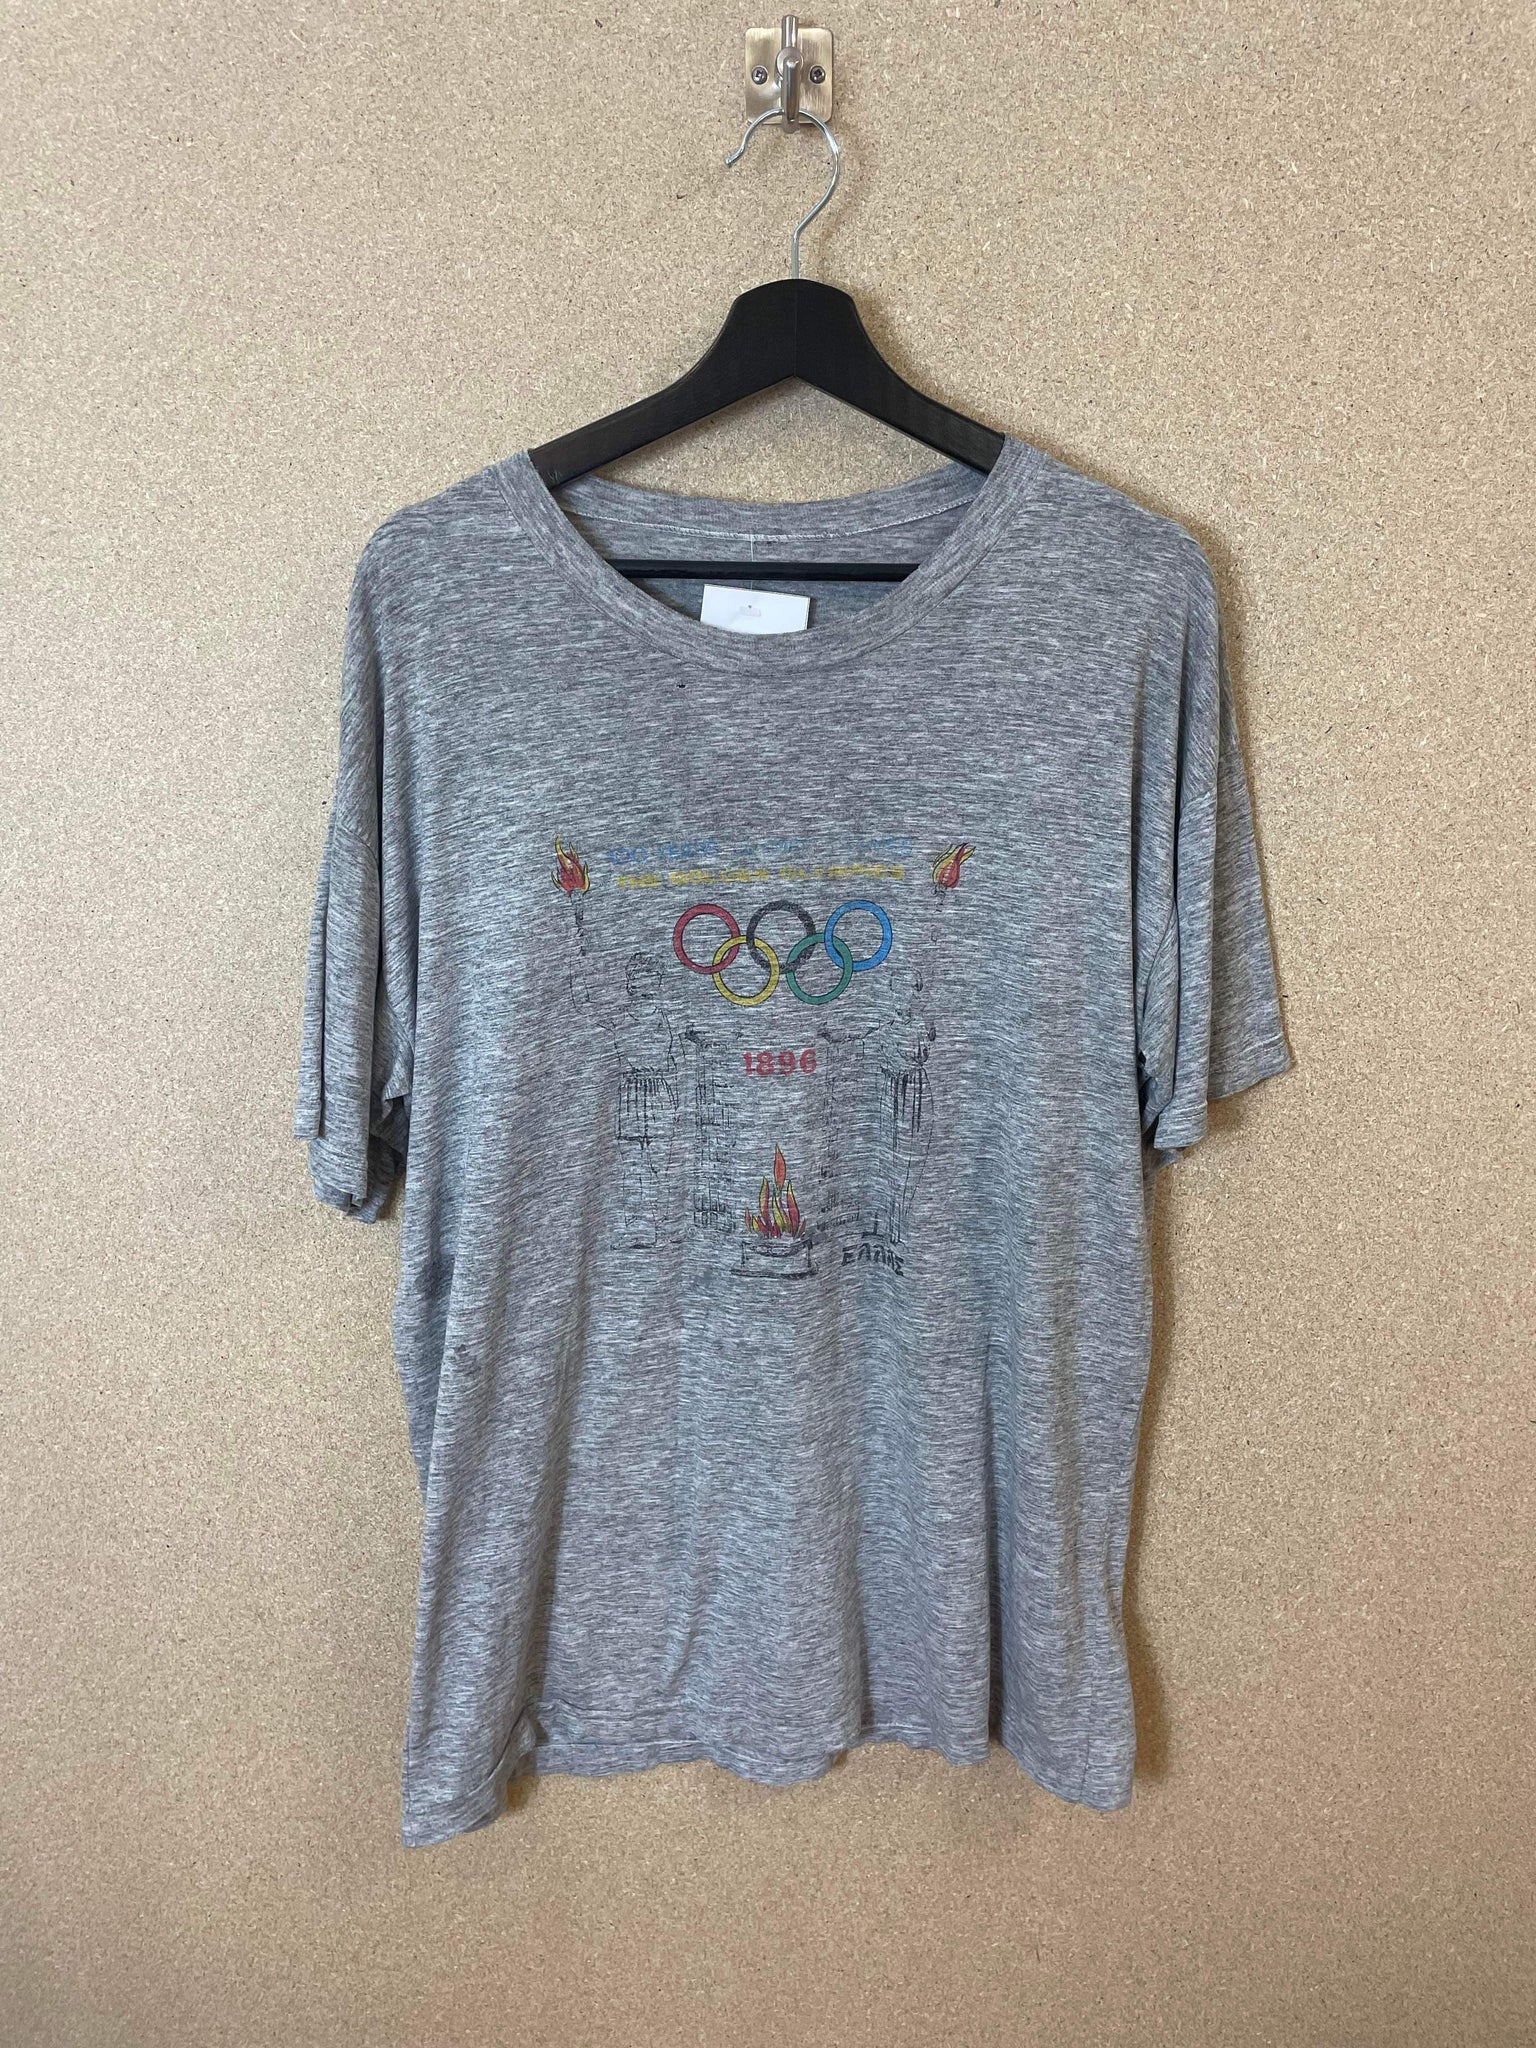 Vintage Olympic Games 100 Years 1998 Tee - L